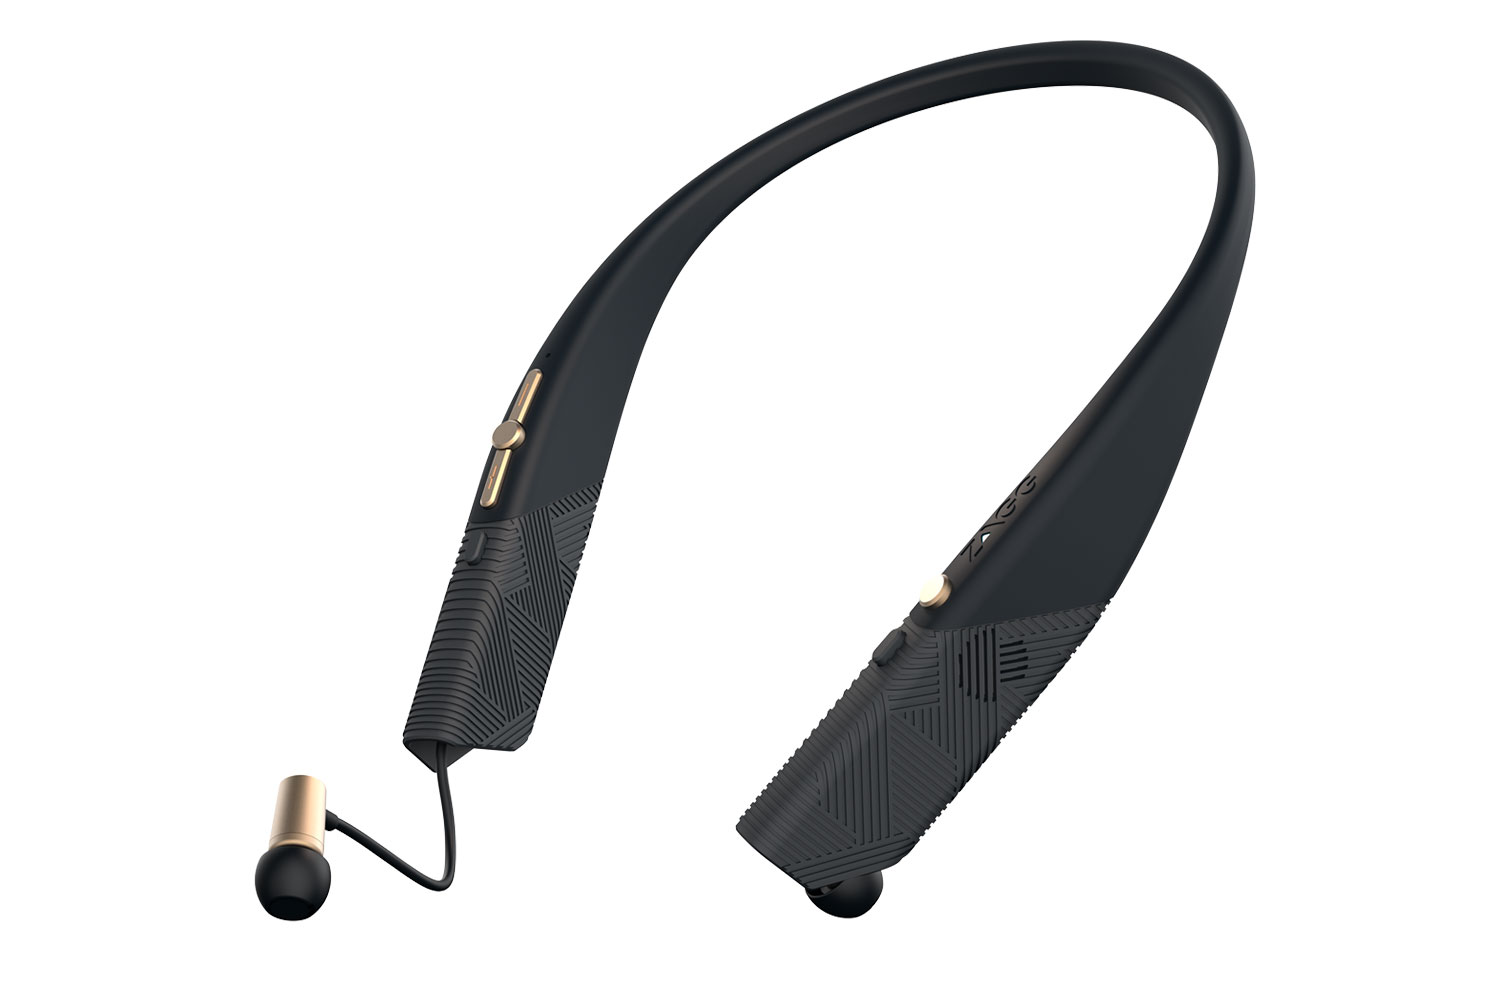 flex arc wireless headset ces 2016 zagg earbuds 003